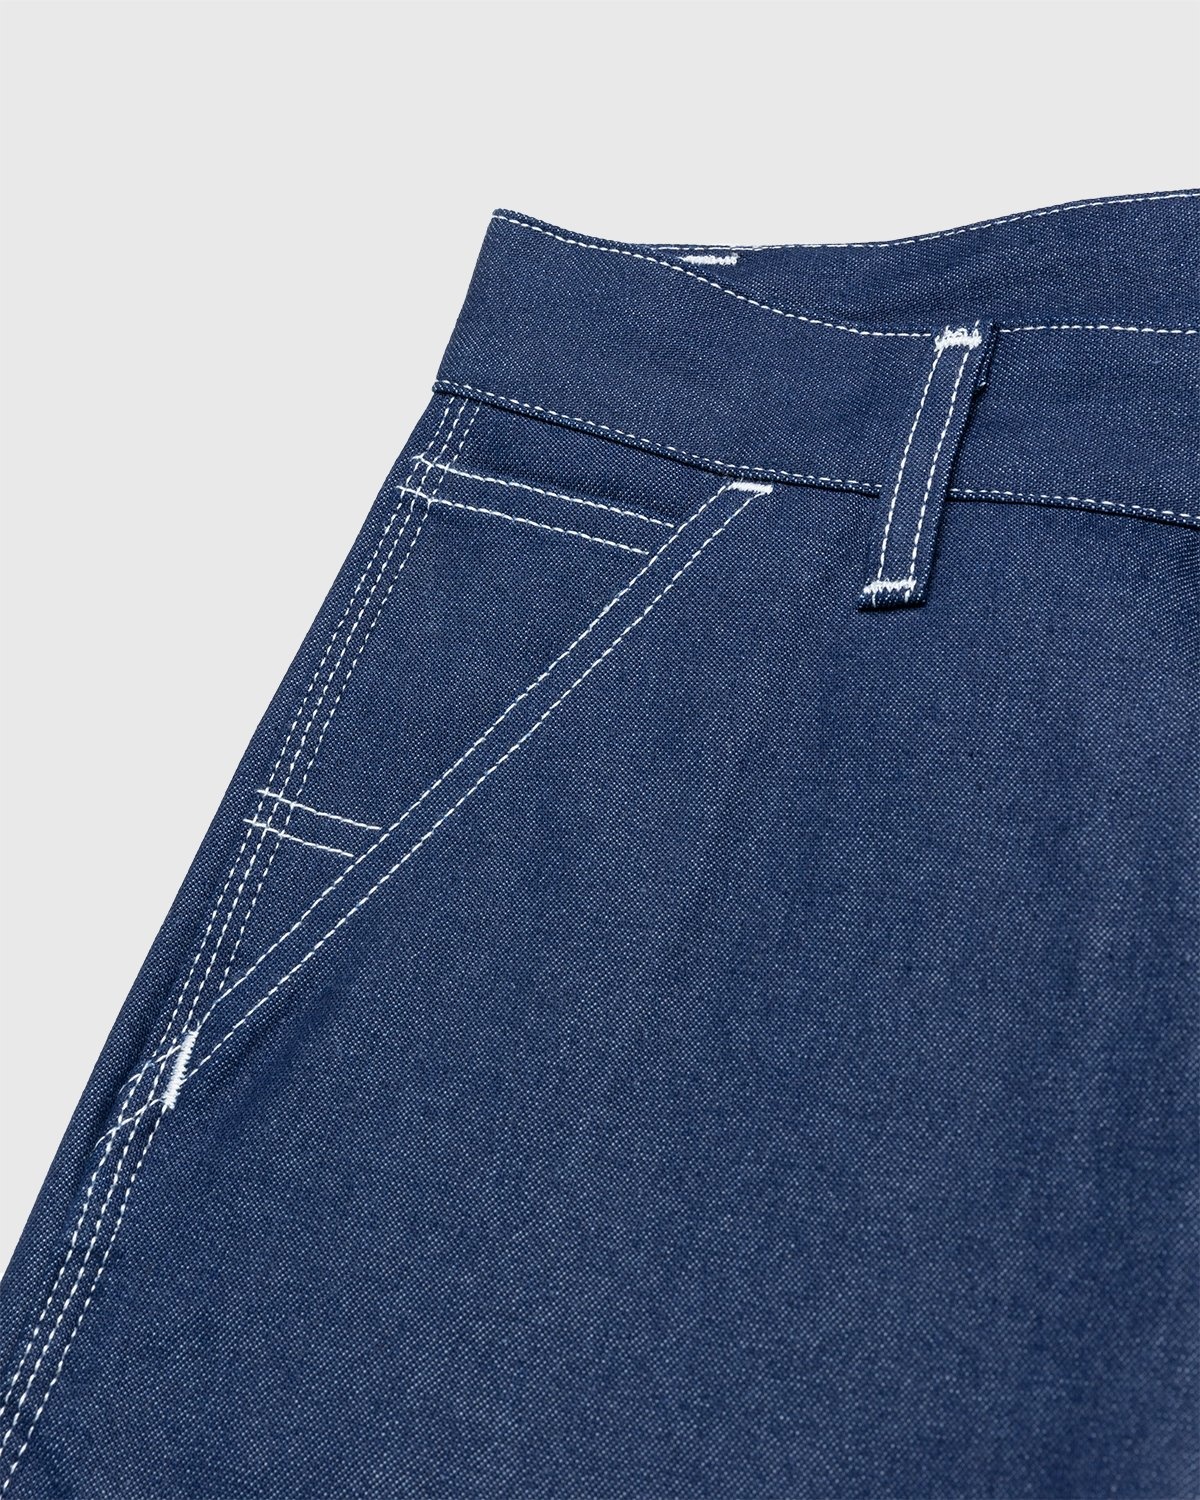 Carhartt WIP – Ruck Single Knee Pant Blue Rigid - Work Pants - Blue - Image 6